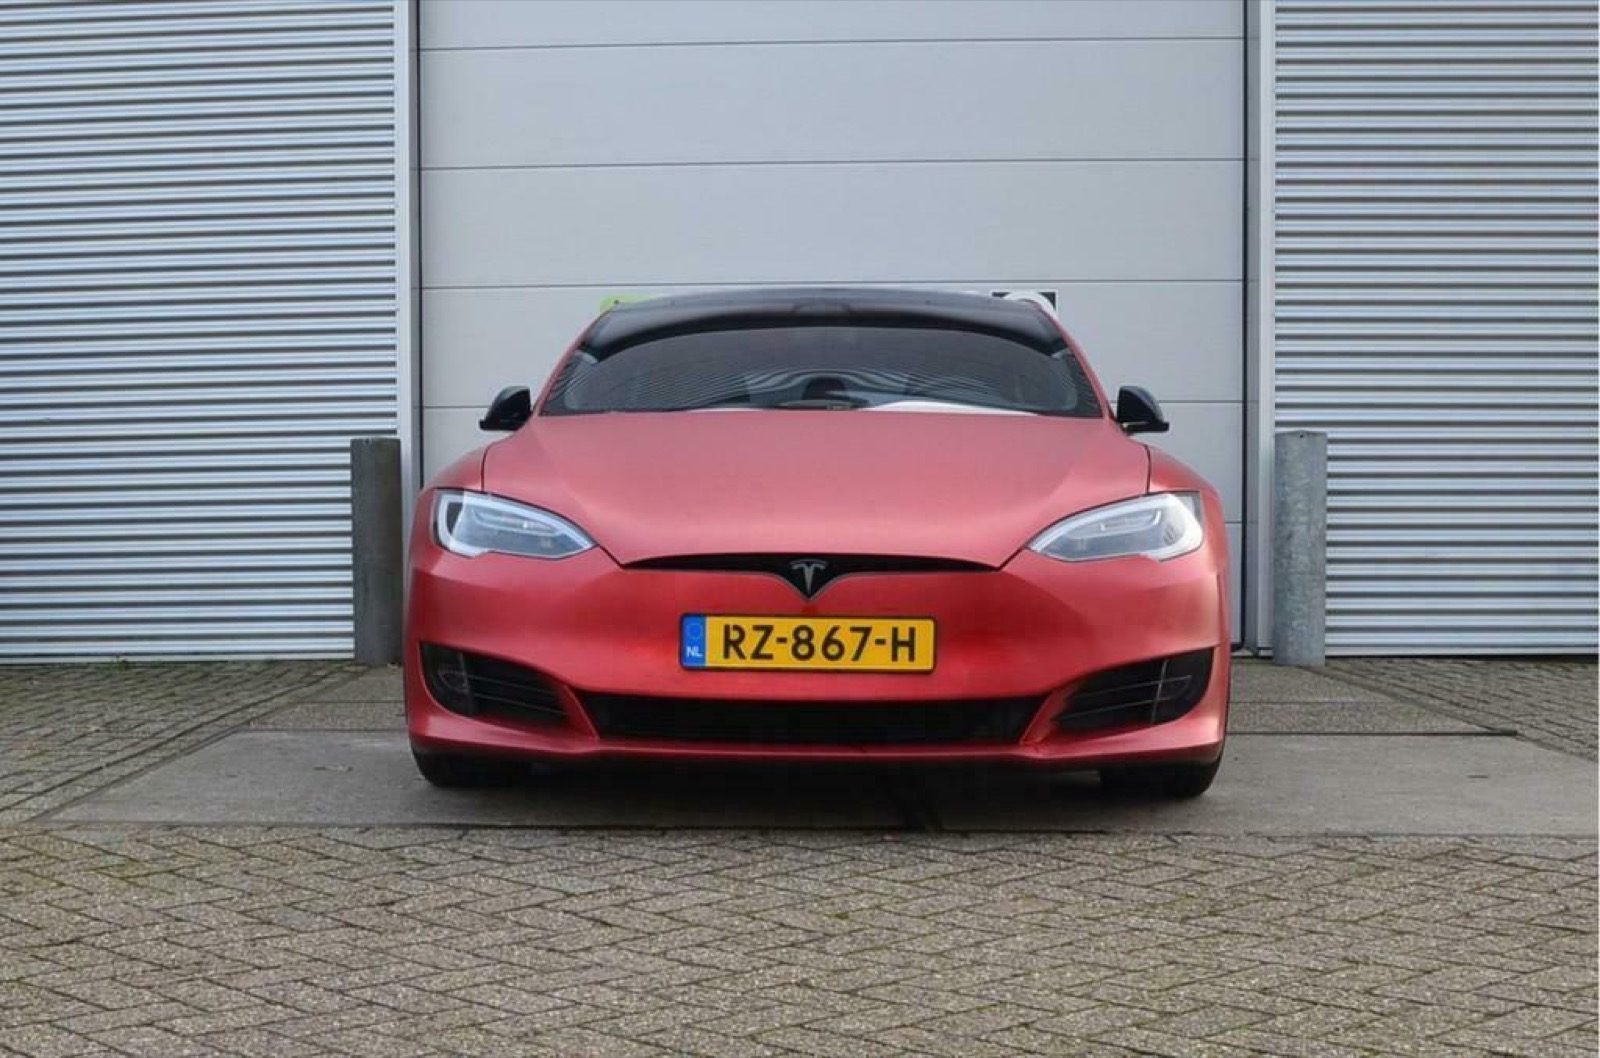 Brandewijn Sobriquette Extremisten 2 jaar oude Model S is 25k duurder dan een nieuwe! - Autoblog.nl